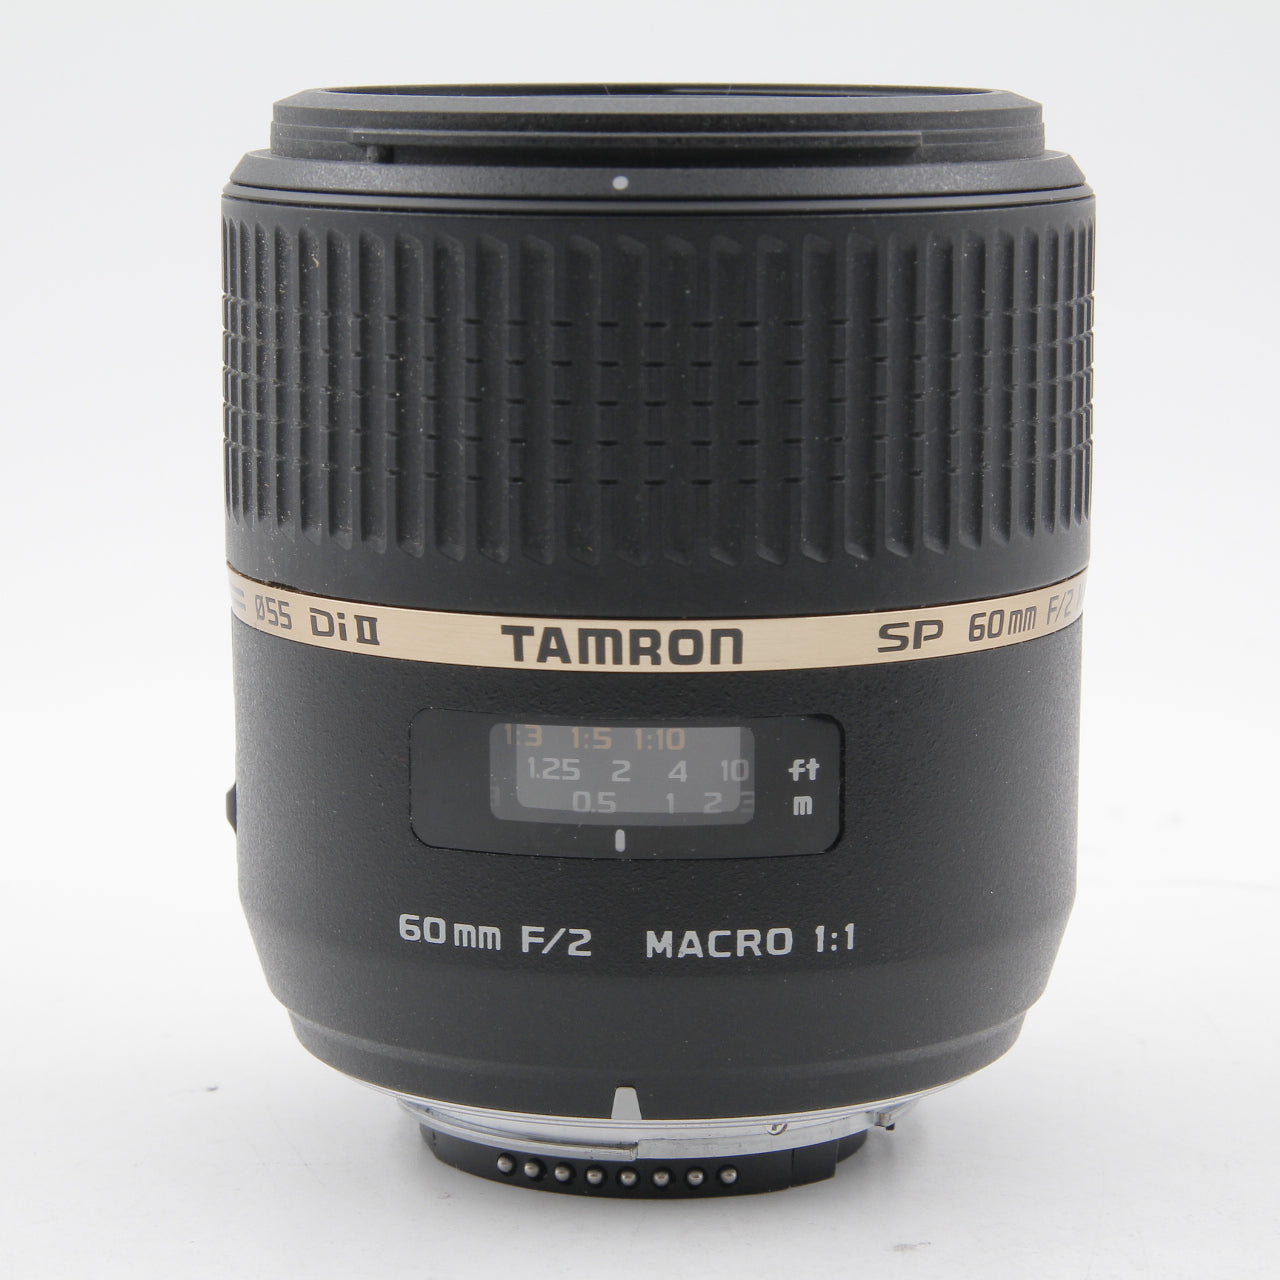 USED *** Tamron SP Di II 60mm f/2 Macro Nikon F Mount – PROCAM ...